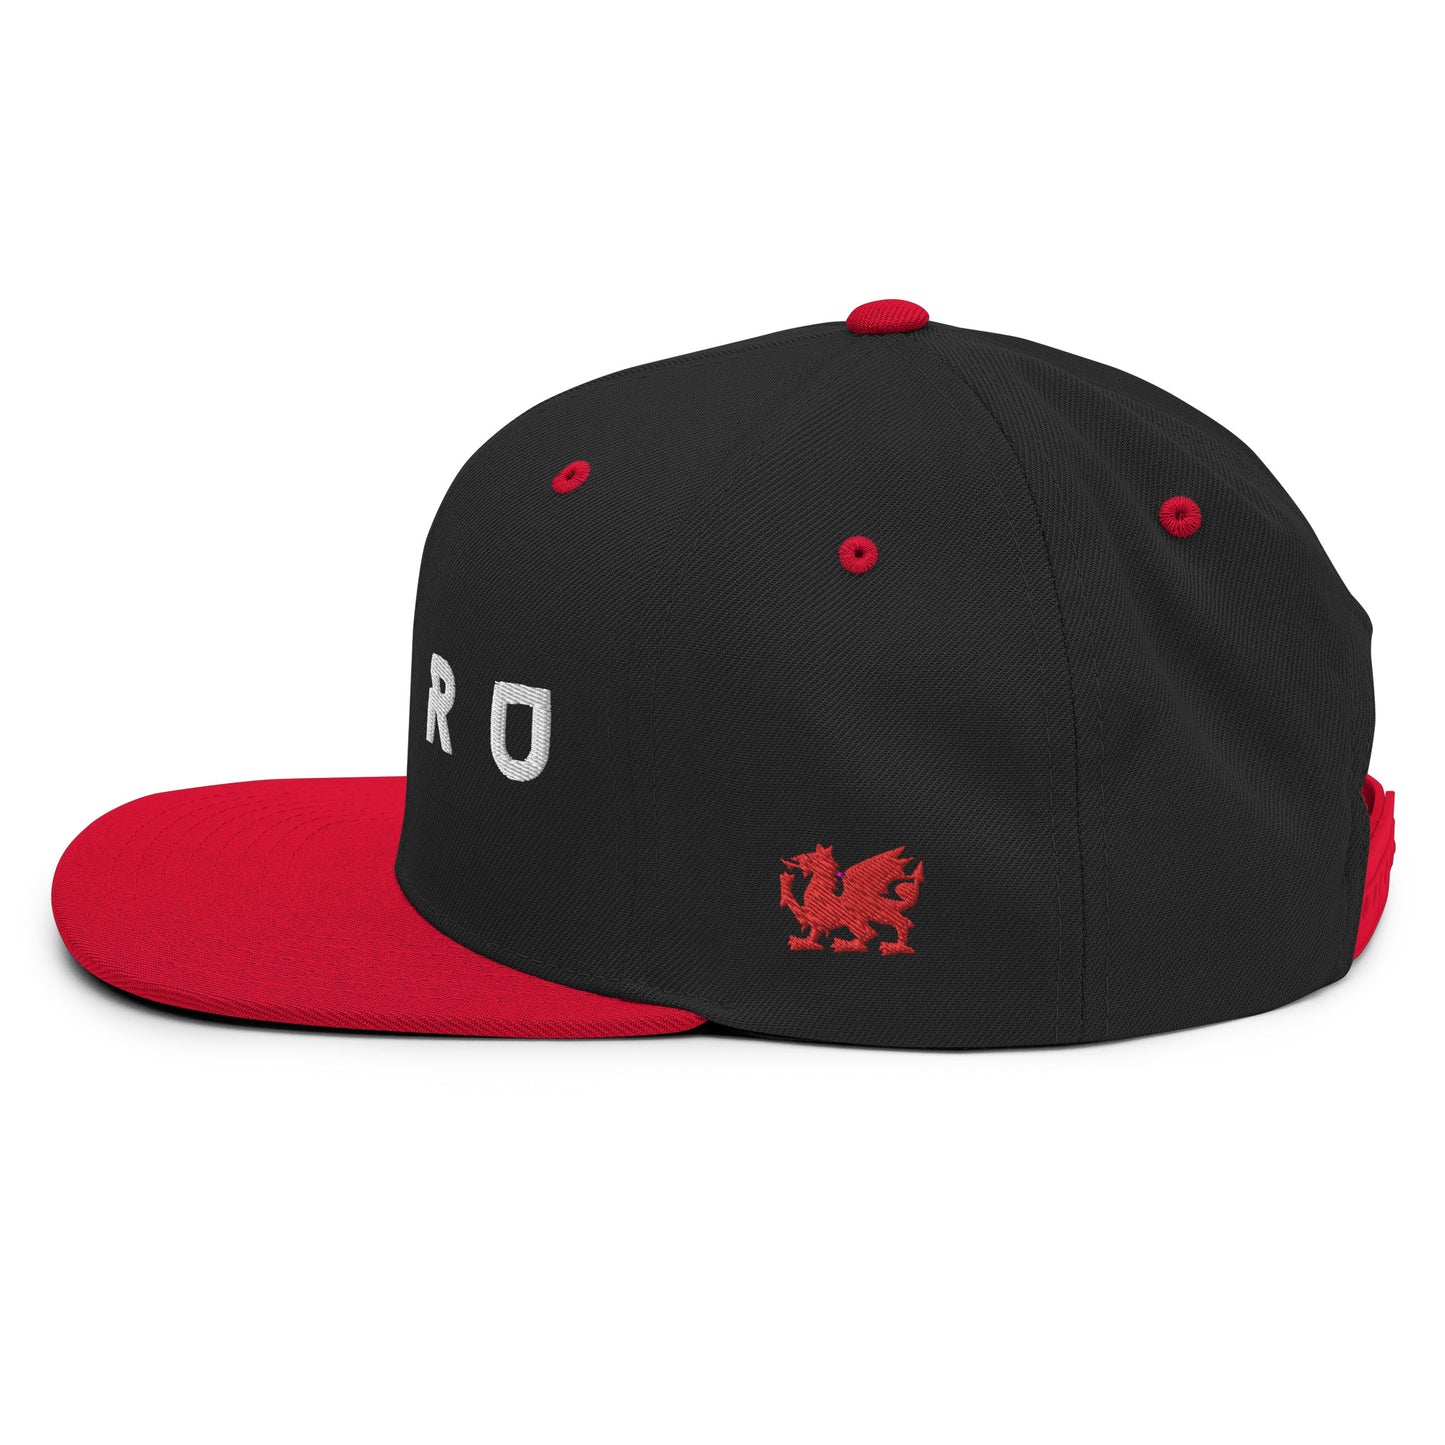 Cymru - Snapback Hat